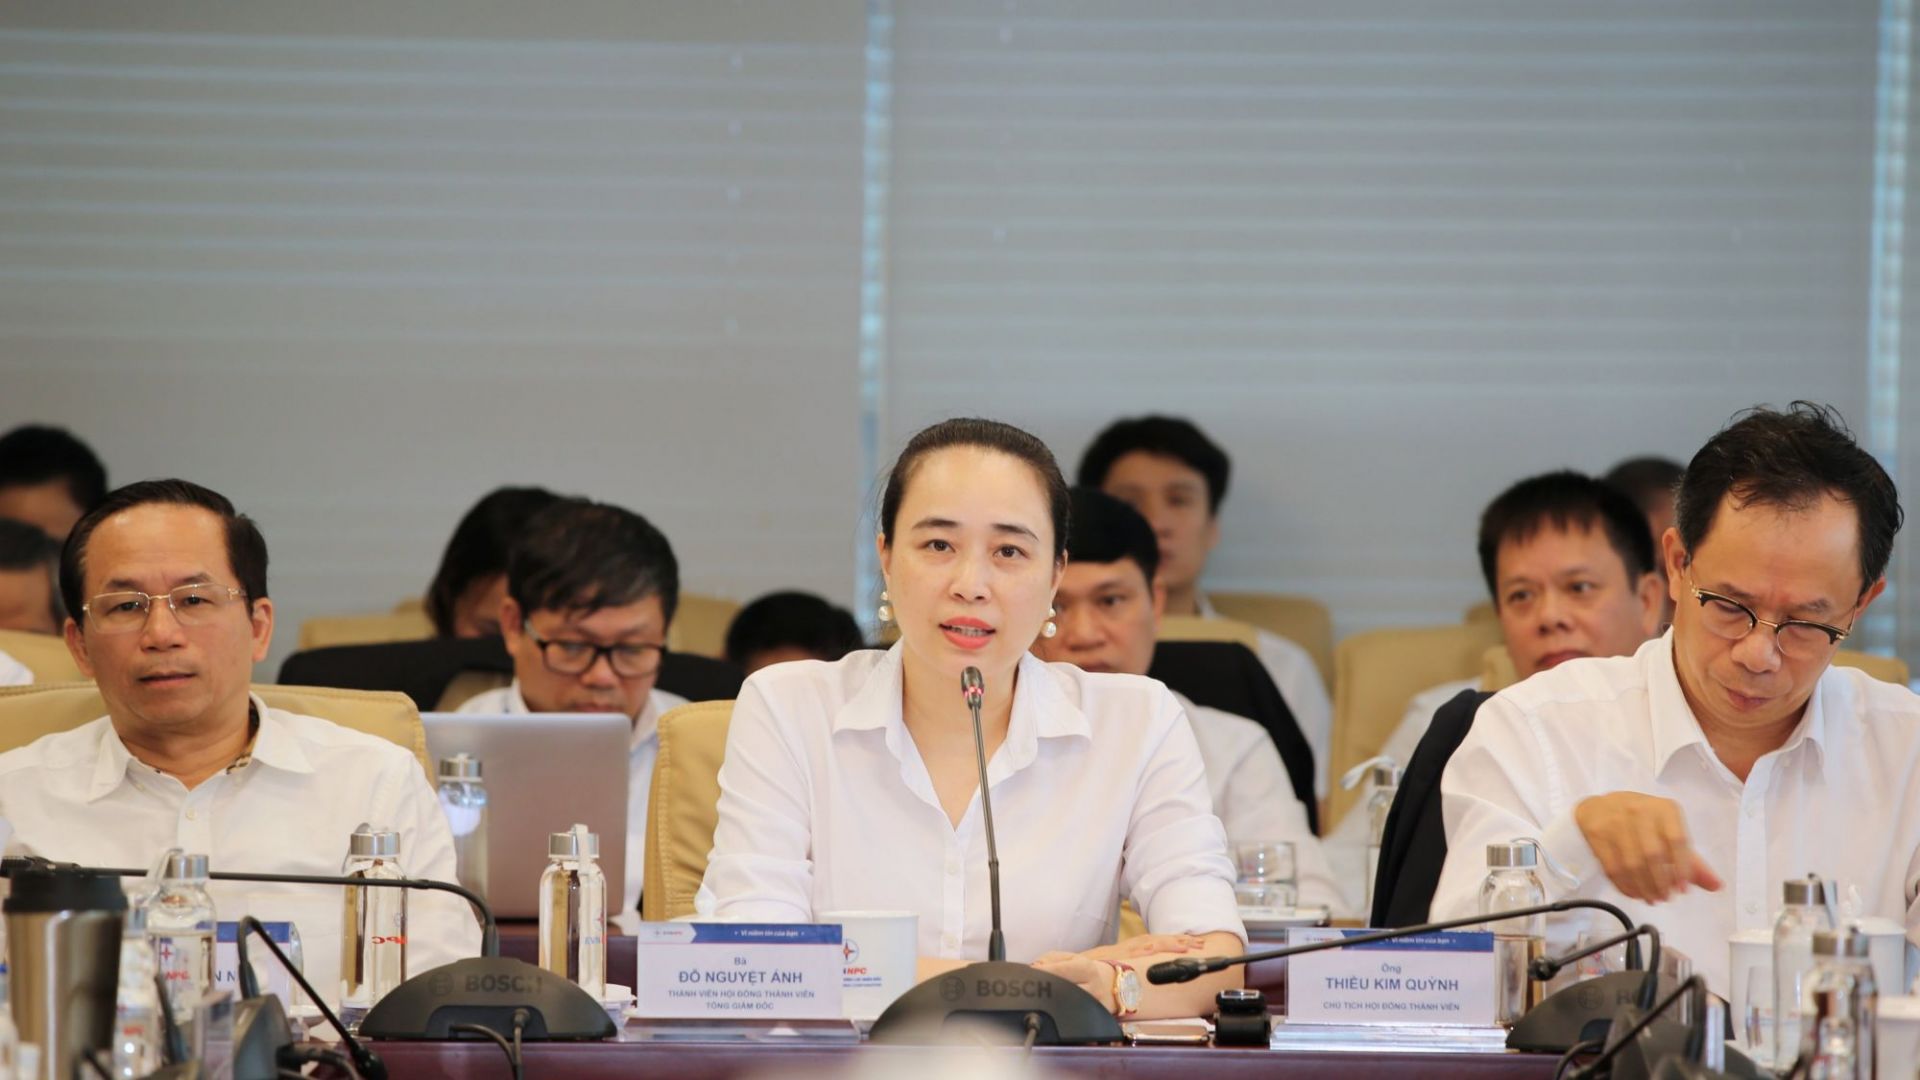 Bà Đỗ Nguyệt Ánh - Thành viên HĐTV, Tổng Giám đốc EVNNPC phát biểu tại buổi họp